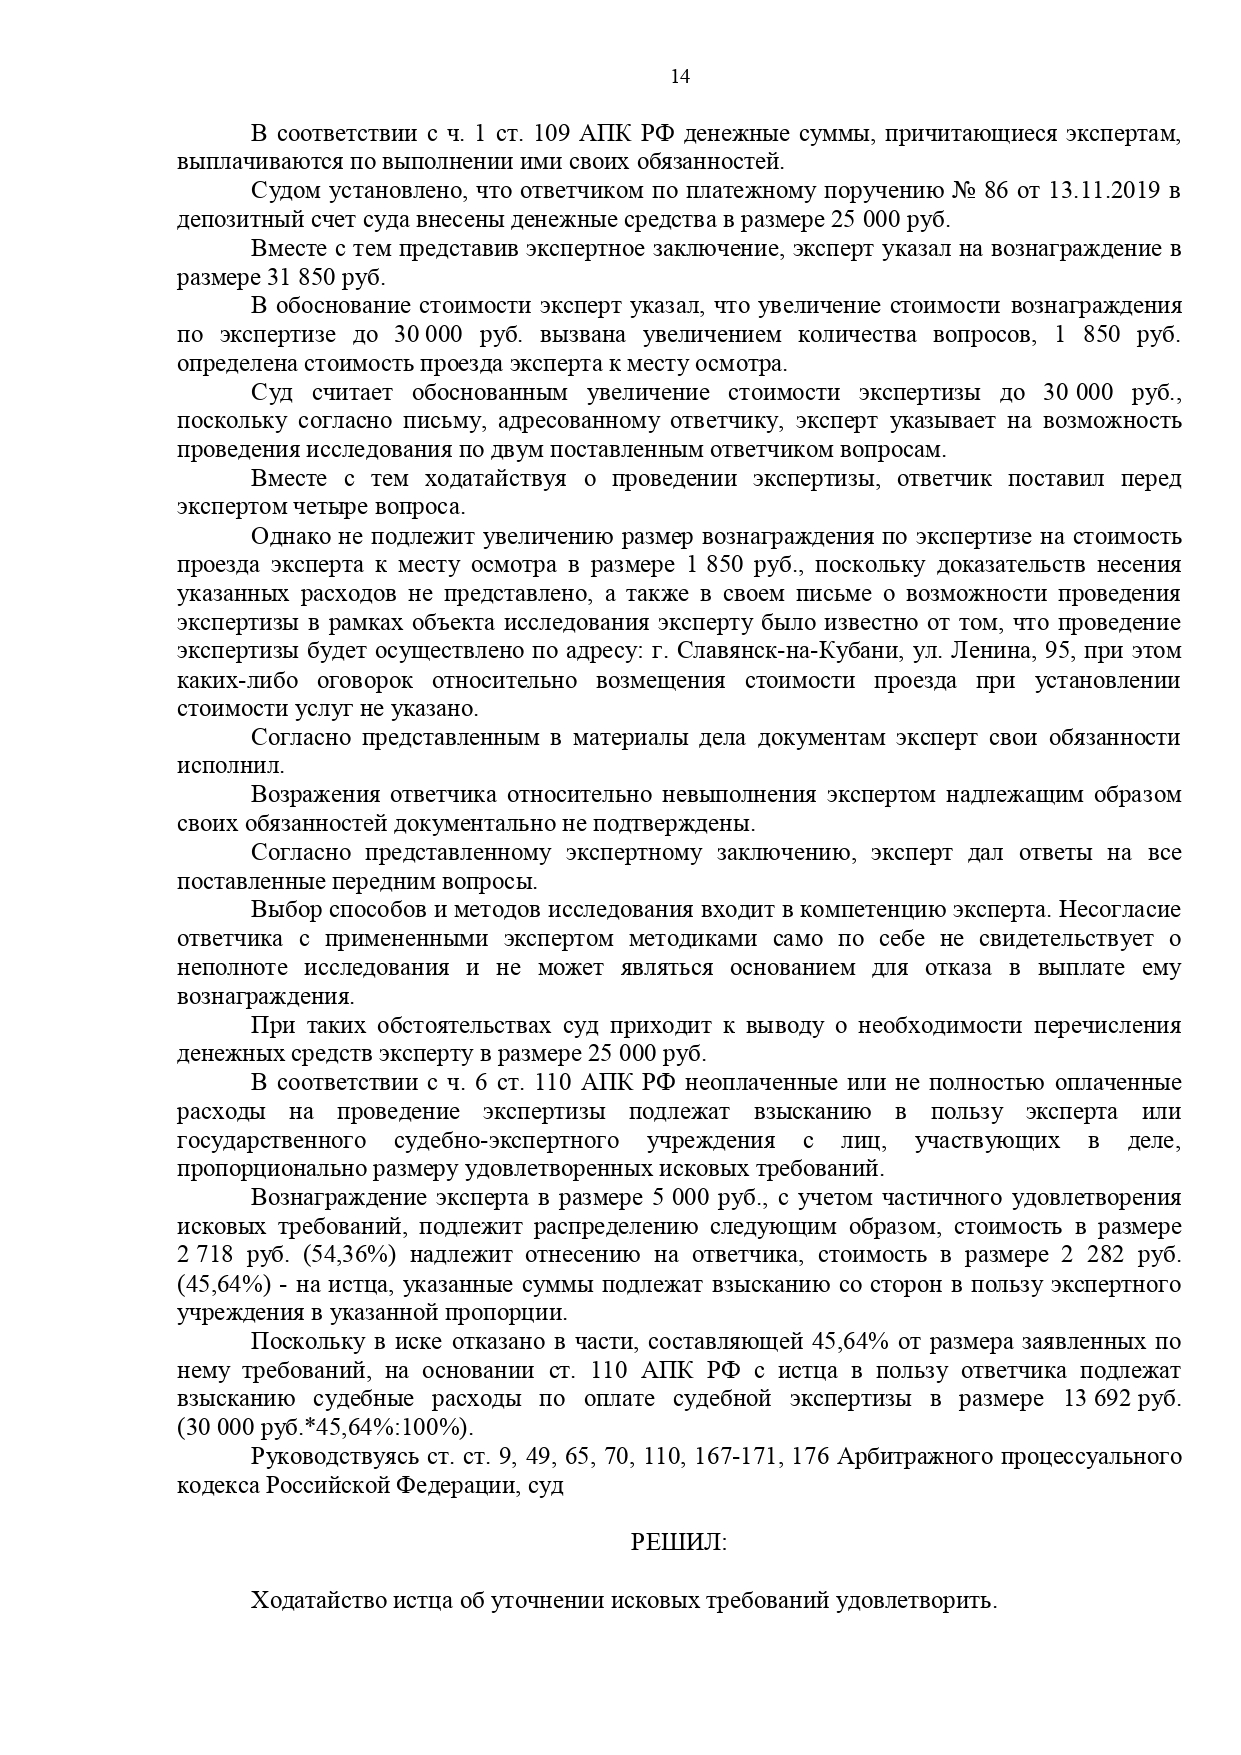 Арбитражный суд Краснодарского края вынес решение по делу №А32-25144/2019